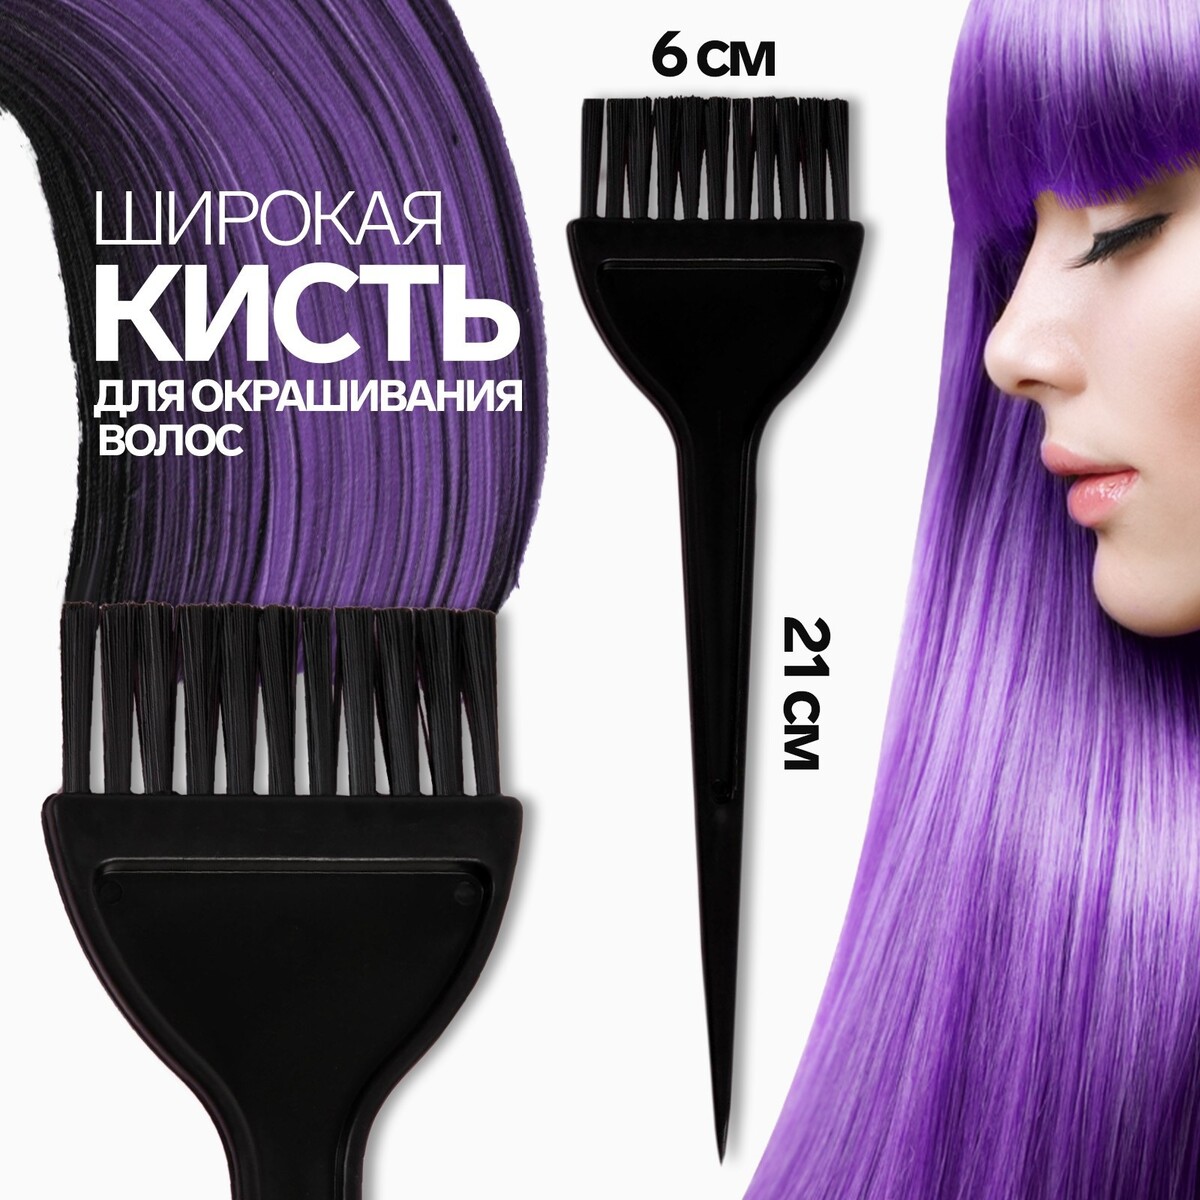 Кисть для окрашивания волос, широкая, 21 х 6 см, цвет черный мелки для окрашивания волос пурпурный 1 шт 2 шт 5133686 2p